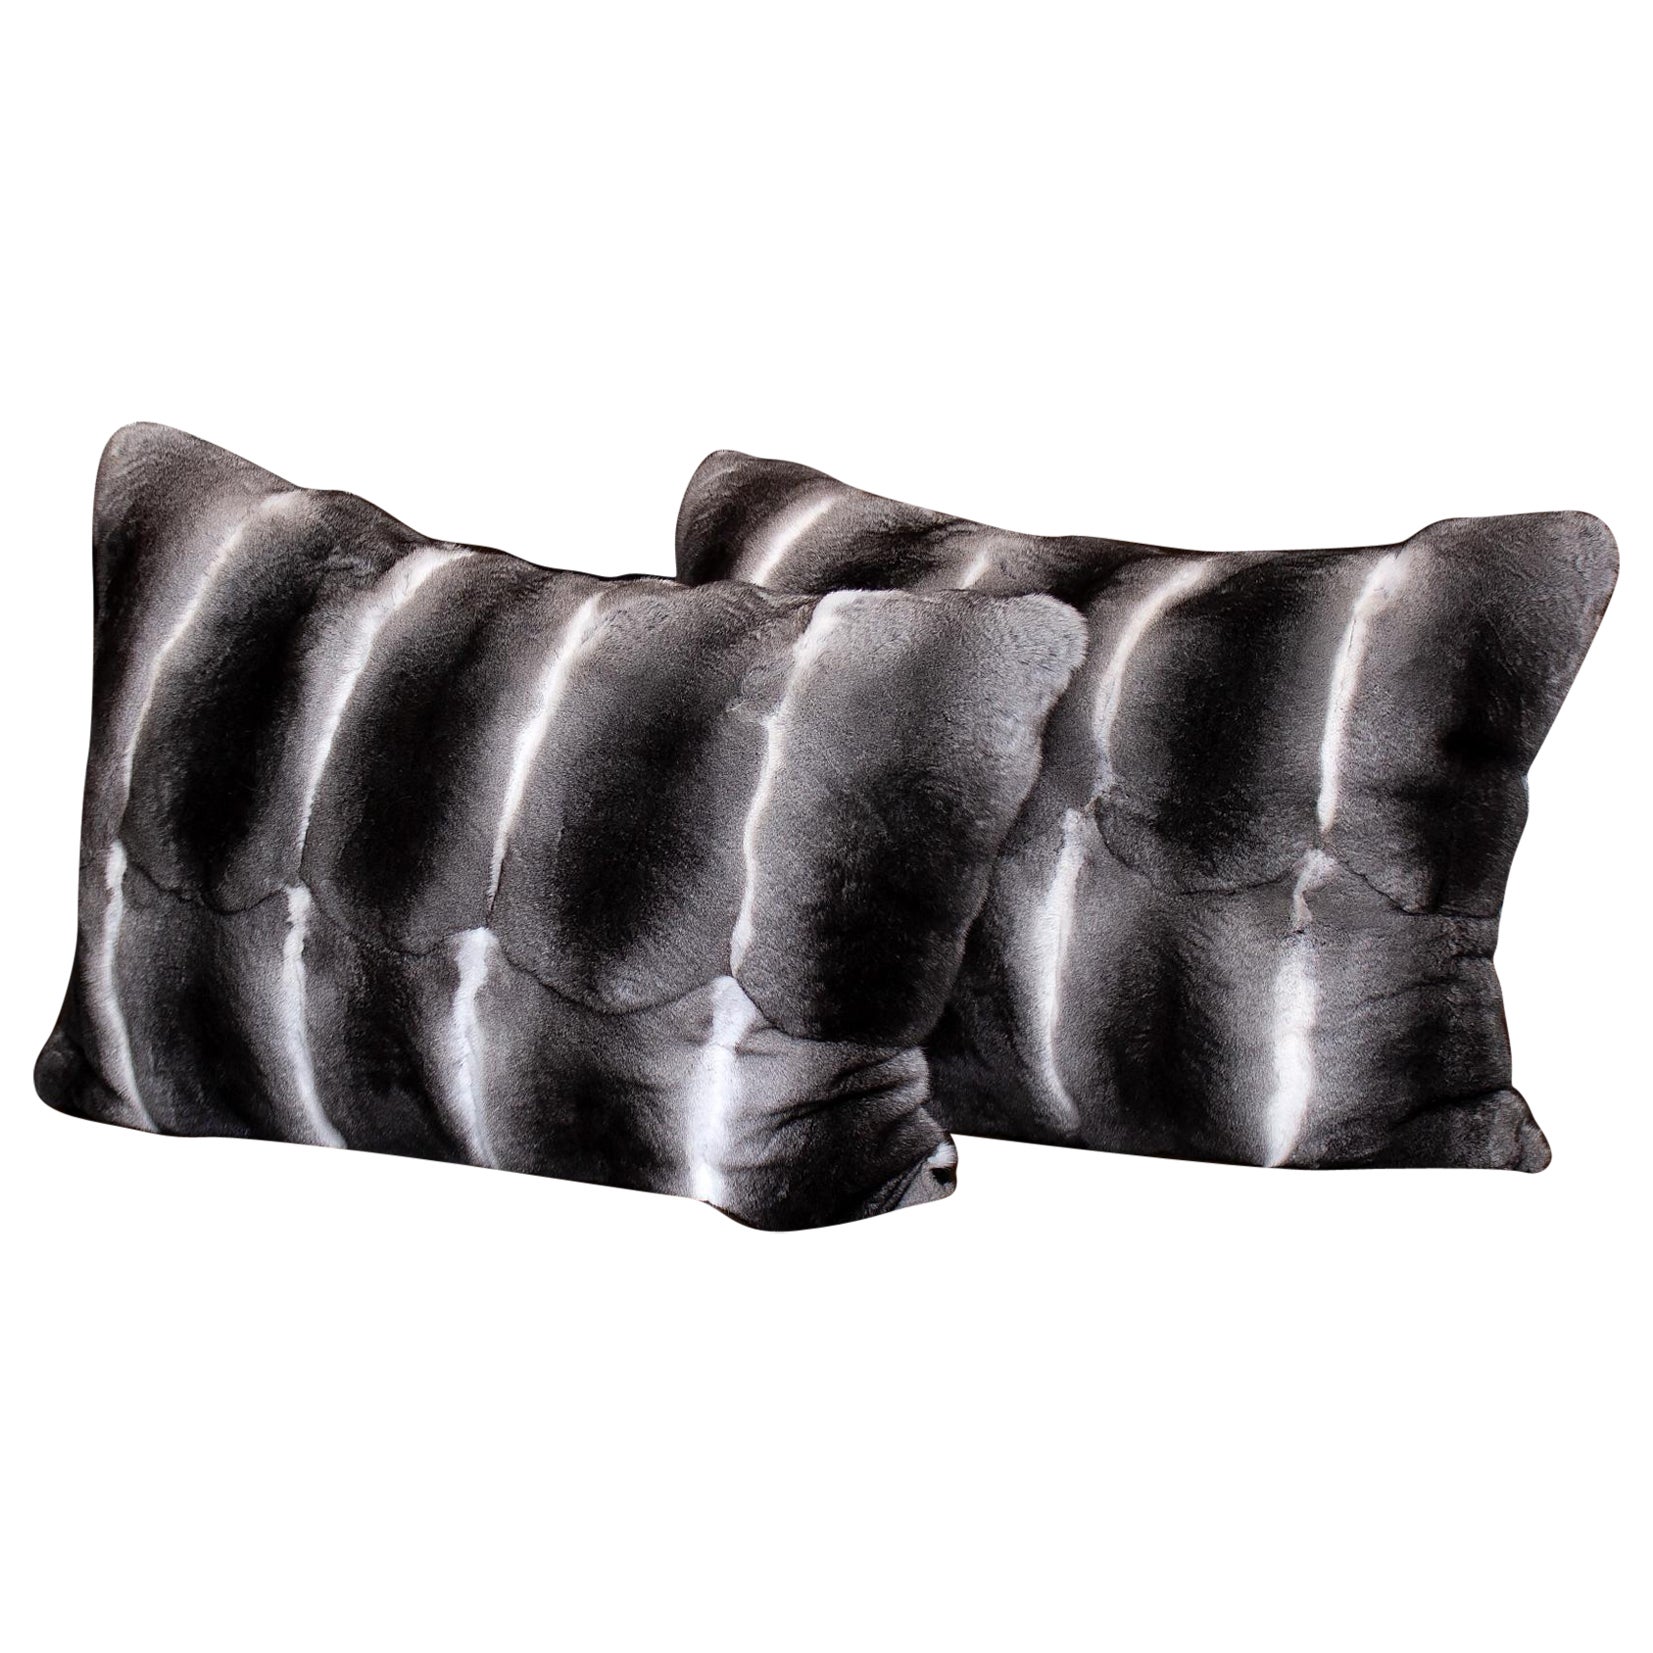 Brand New Black Velvet Chinchilla Fur Pillows (16"x10") For Sale